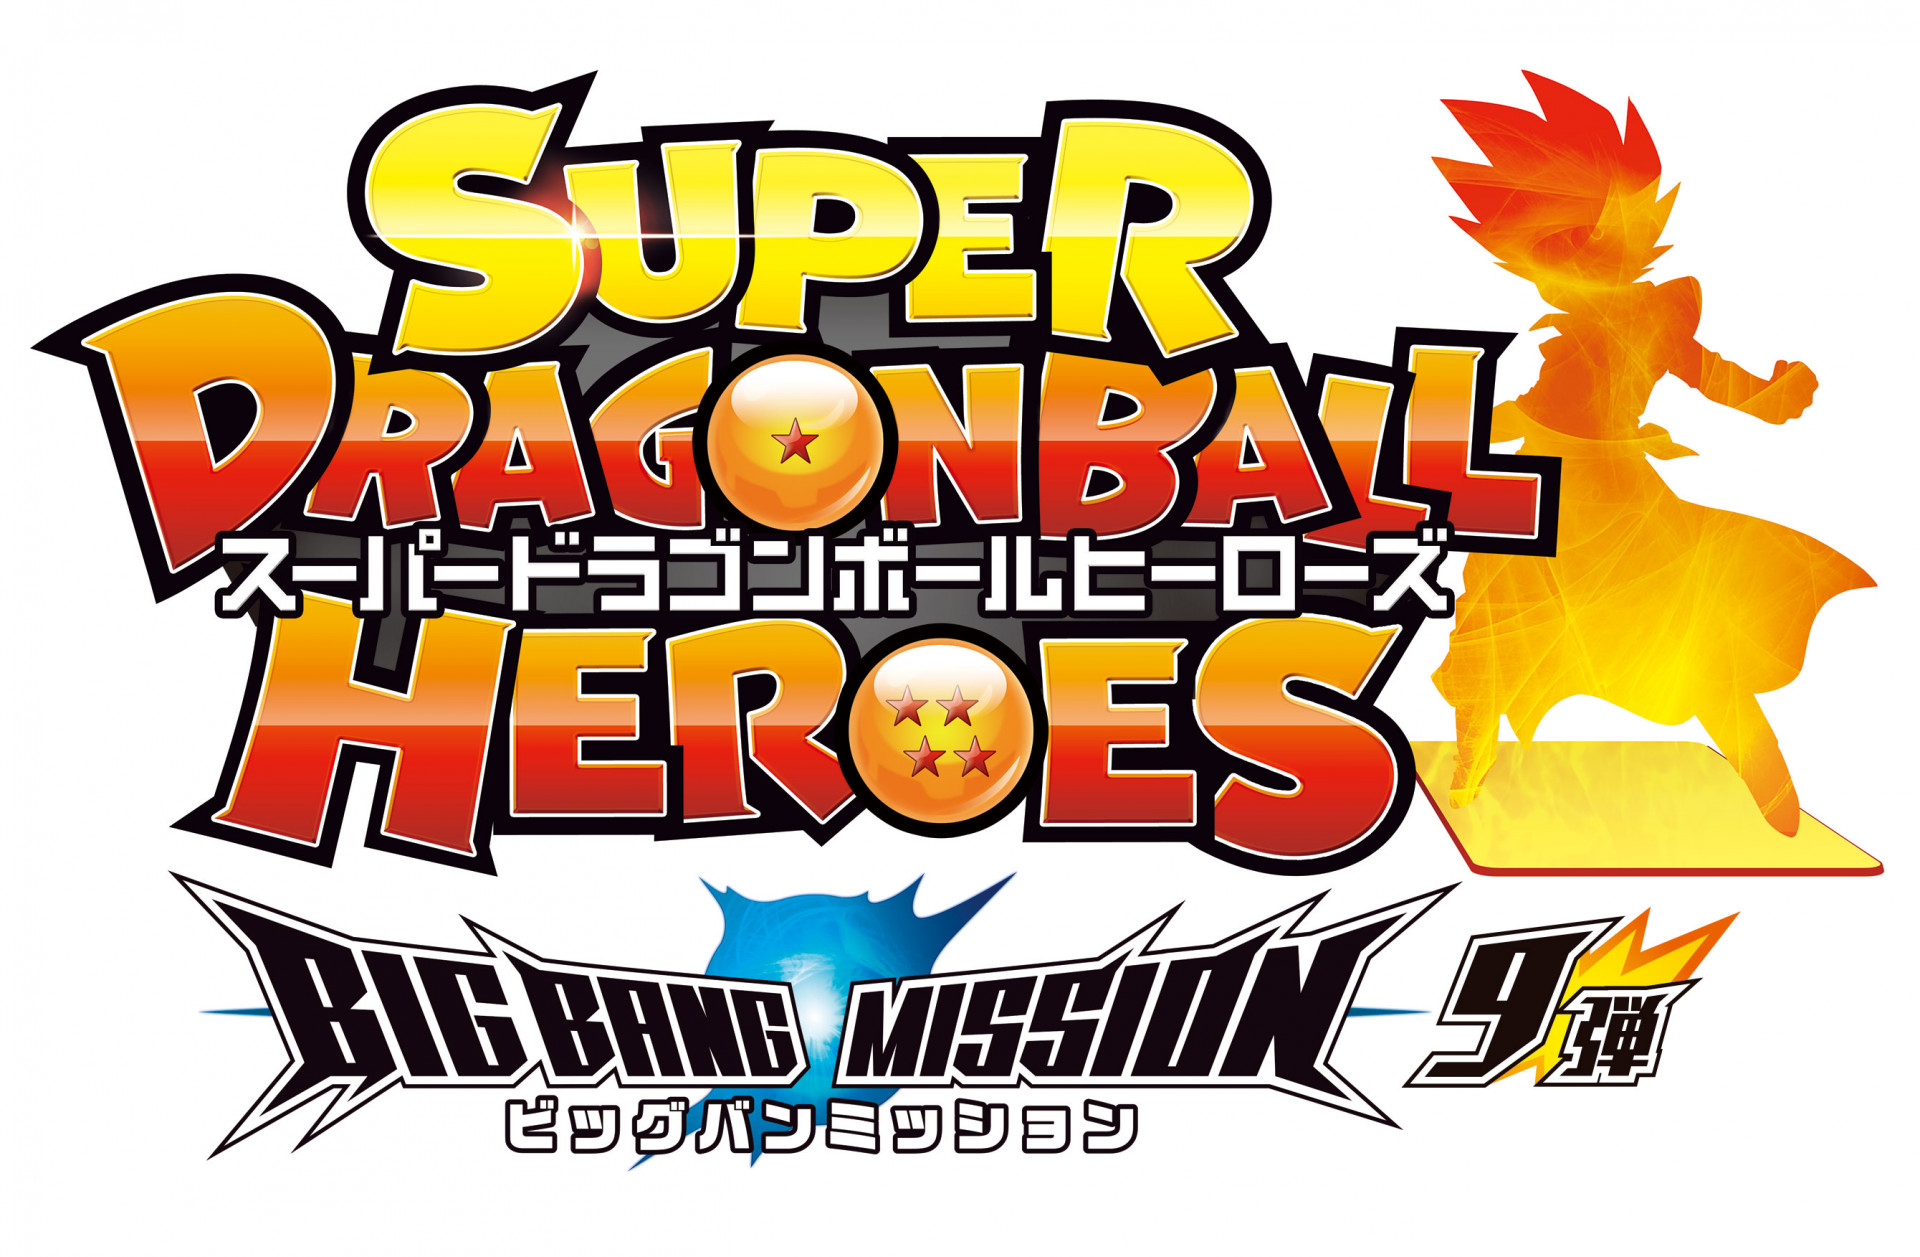 Die Big Bang Mission 9 von Super Dragon Ball Heroes wurde veröffentlicht!